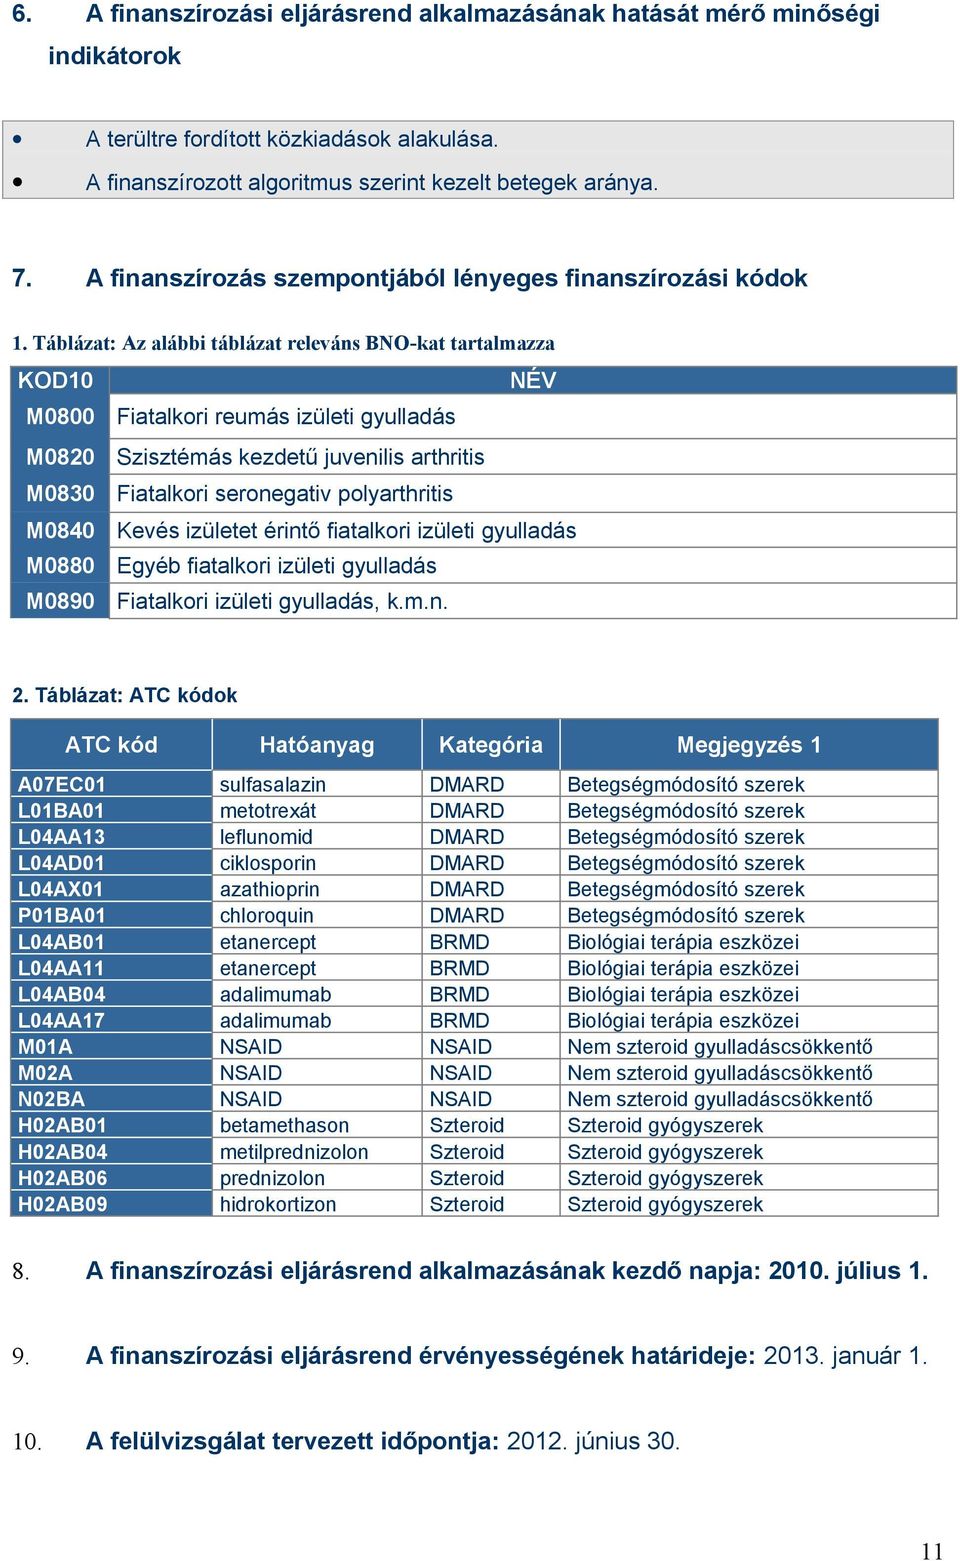 Táblázat: Az alábbi táblázat releváns BNO-kat tartalmazza KOD10 NÉV M0800 Fiatalkori reumás izületi gyulladás M0820 Szisztémás kezdetű juvenilis arthritis M0830 Fiatalkori seronegativ polyarthritis